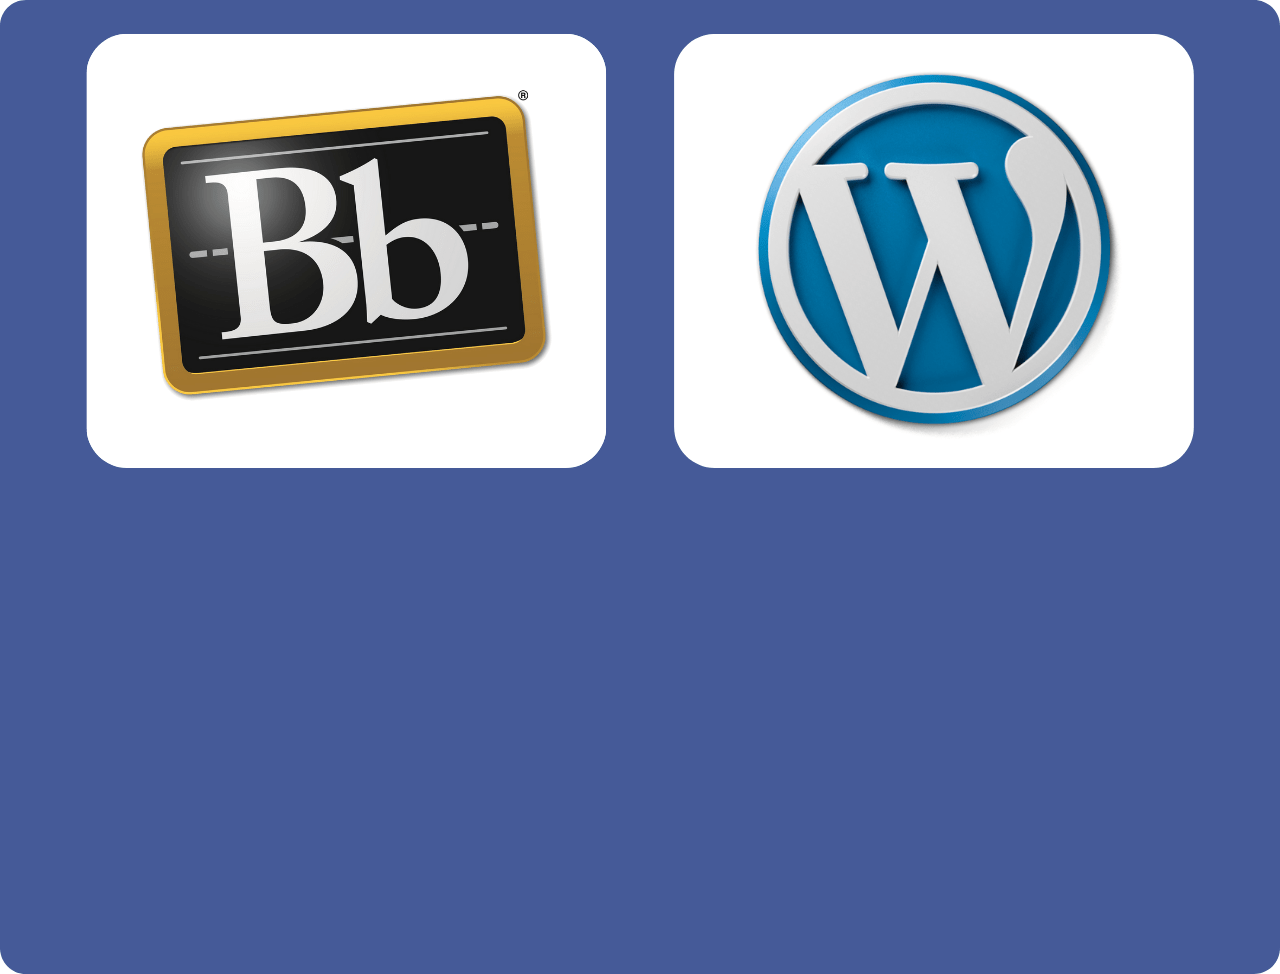 Blackboard and WordPress